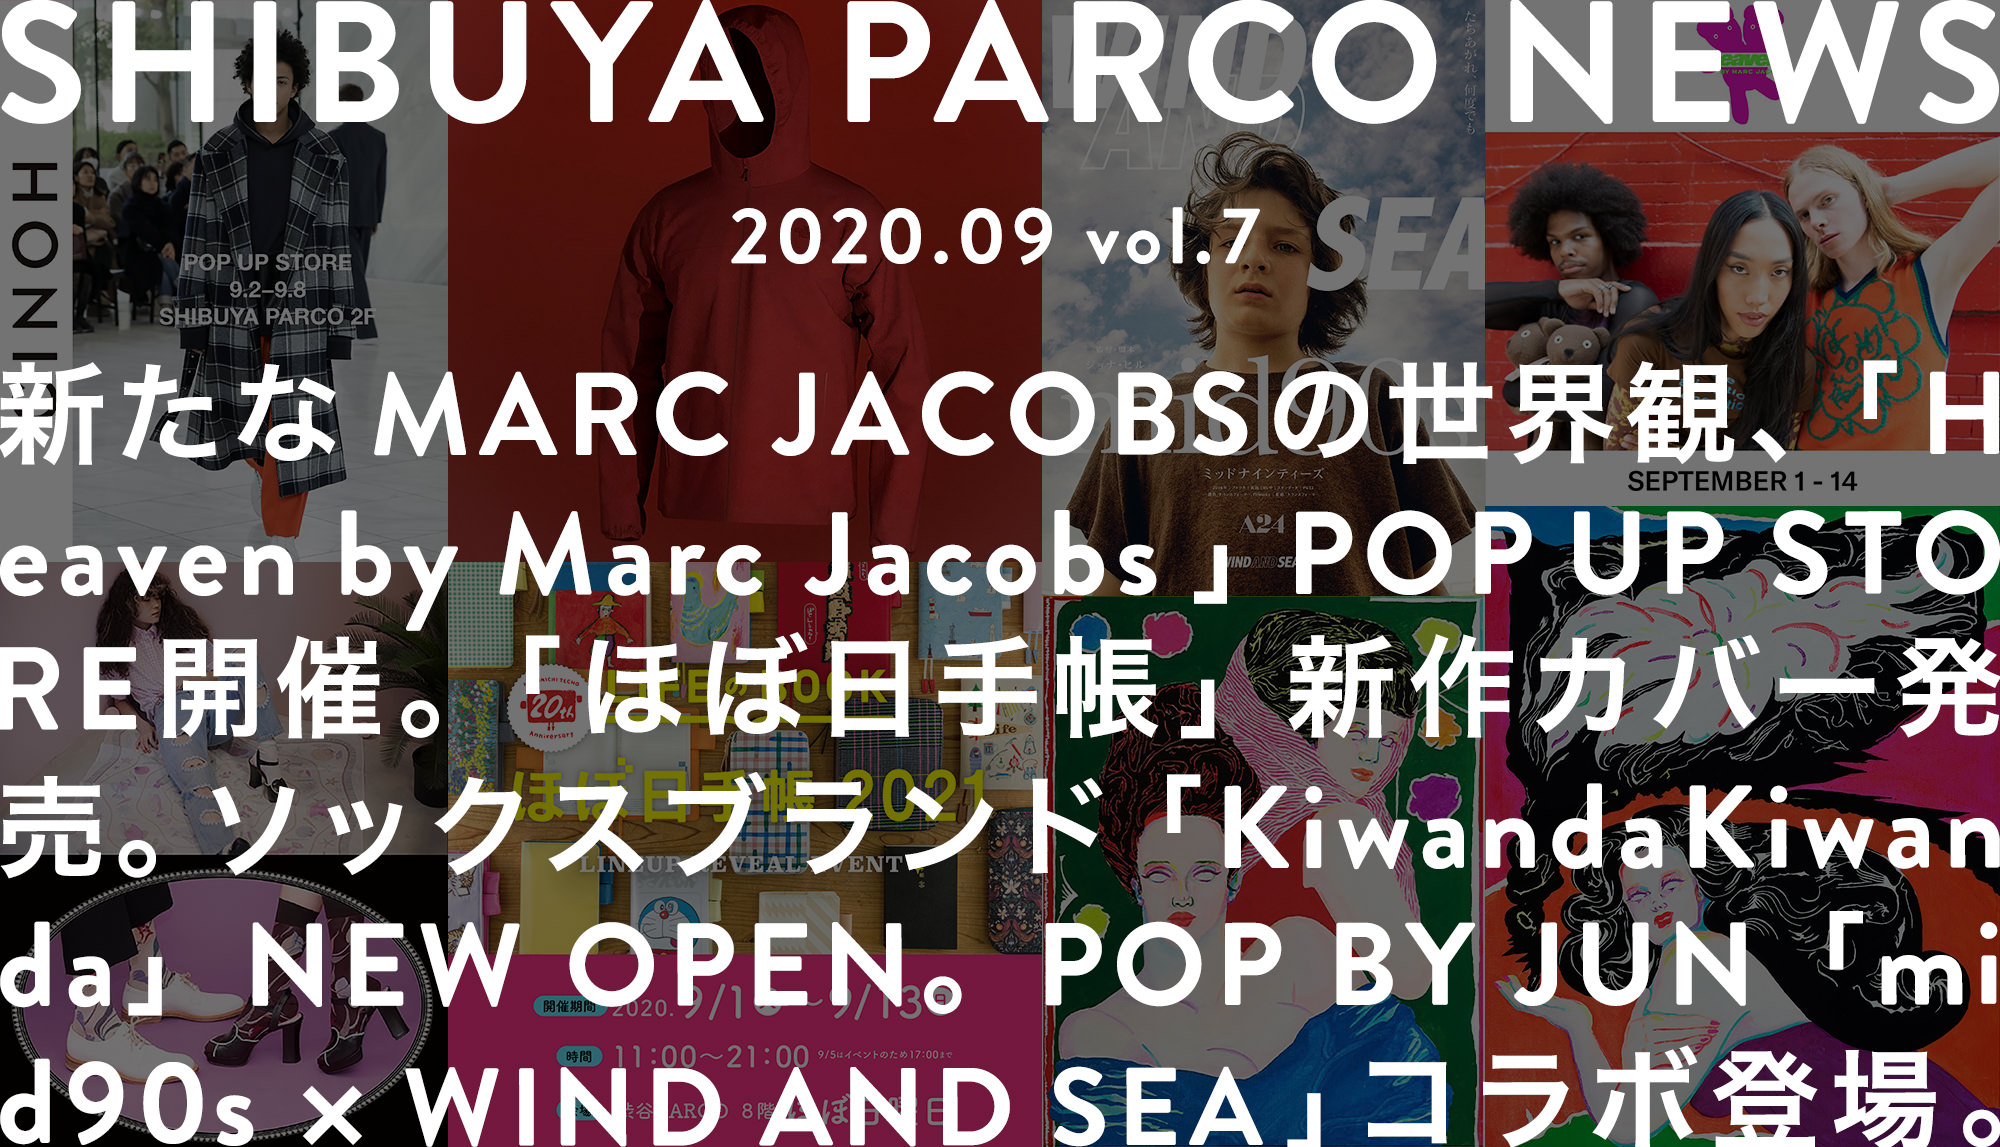 SHIBUYA PARCO NEWS-2020.9-vol.7